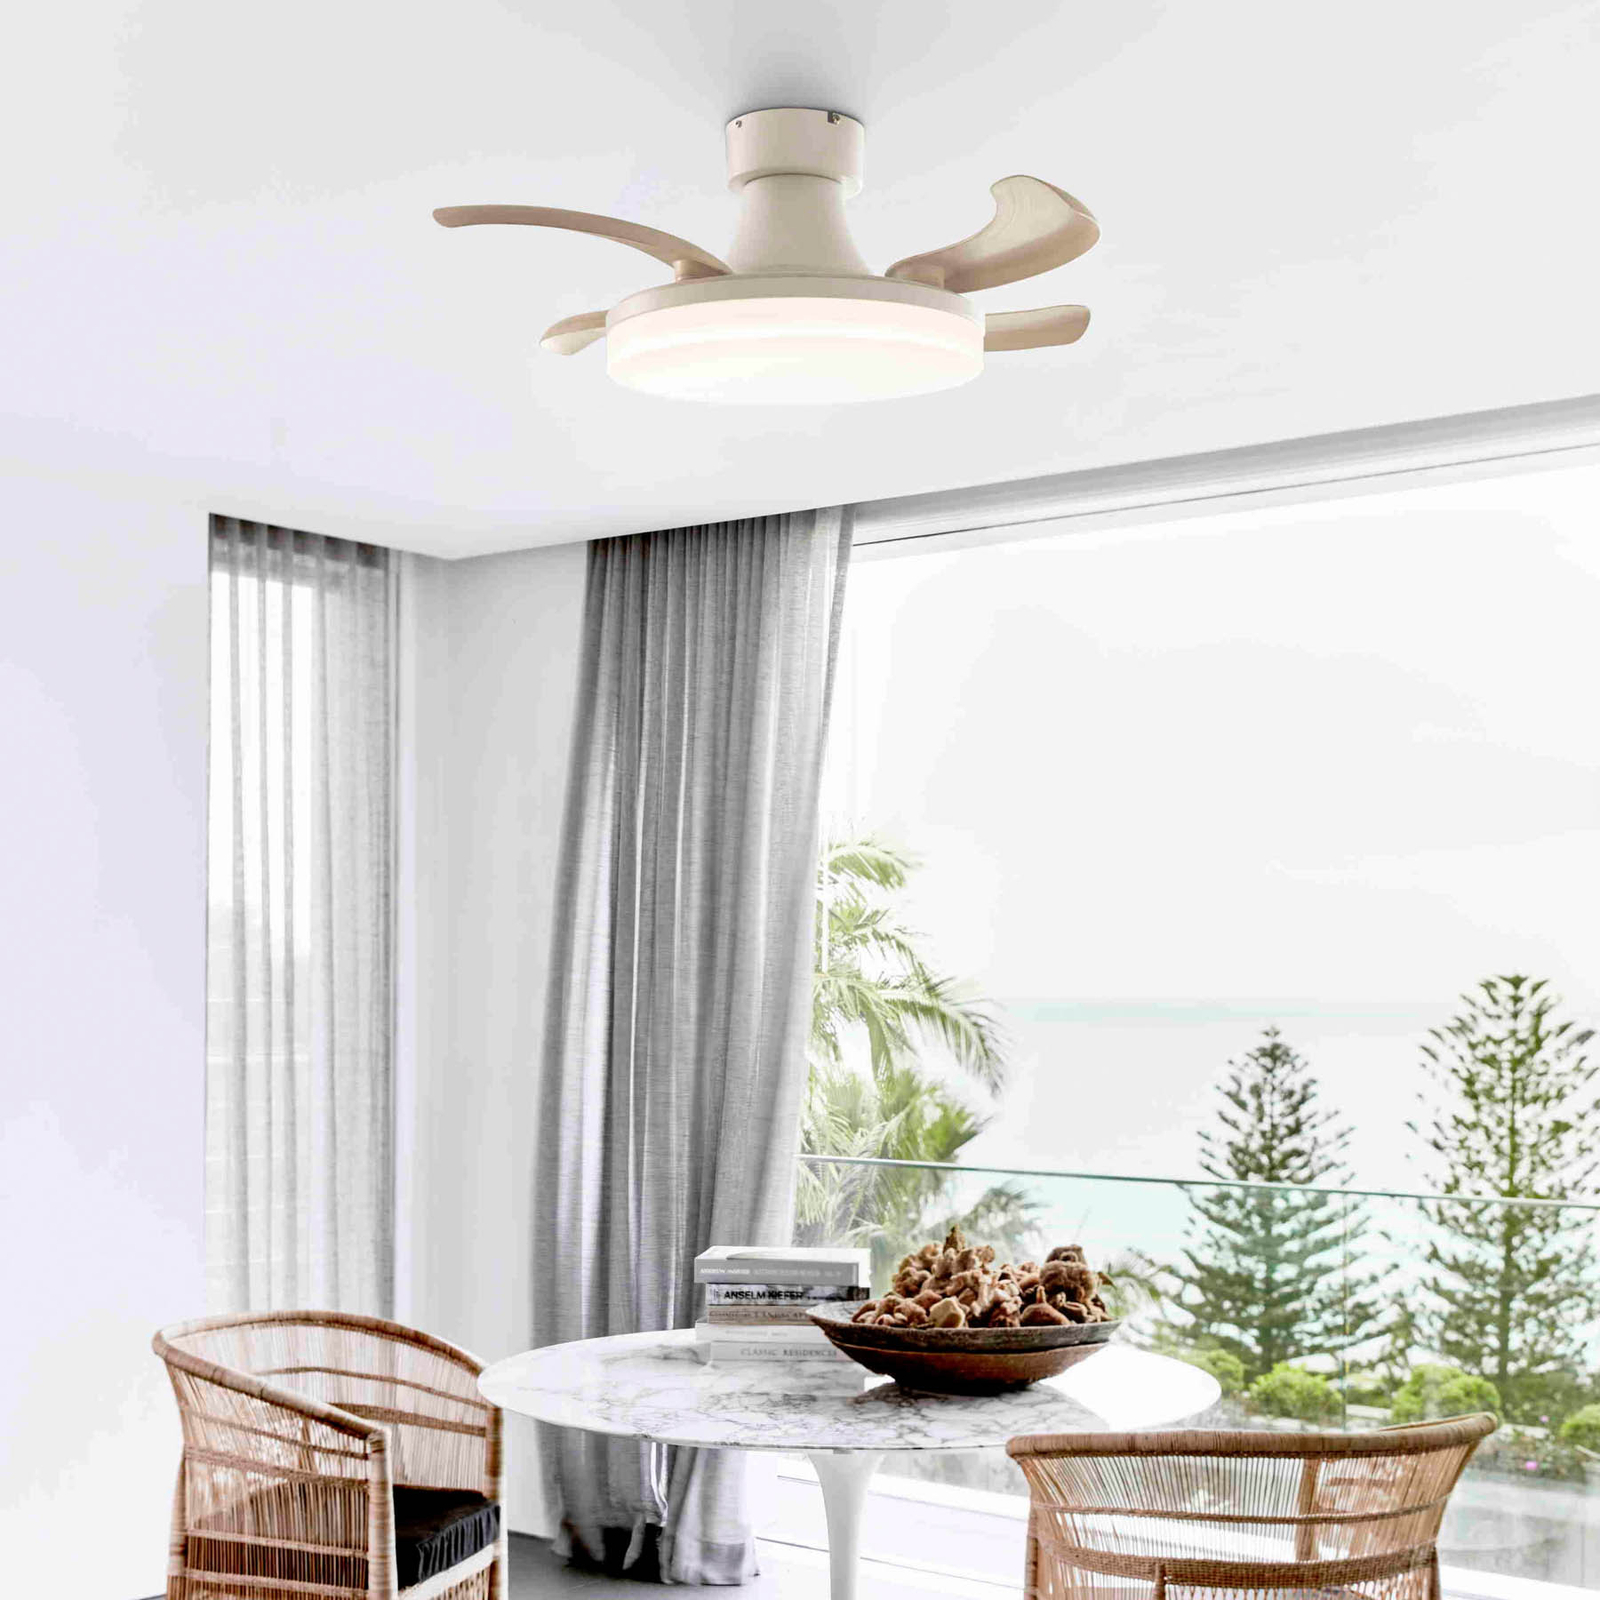 Beacon LED ceiling fan Fanaway Orbit white Ø 91 cm quiet